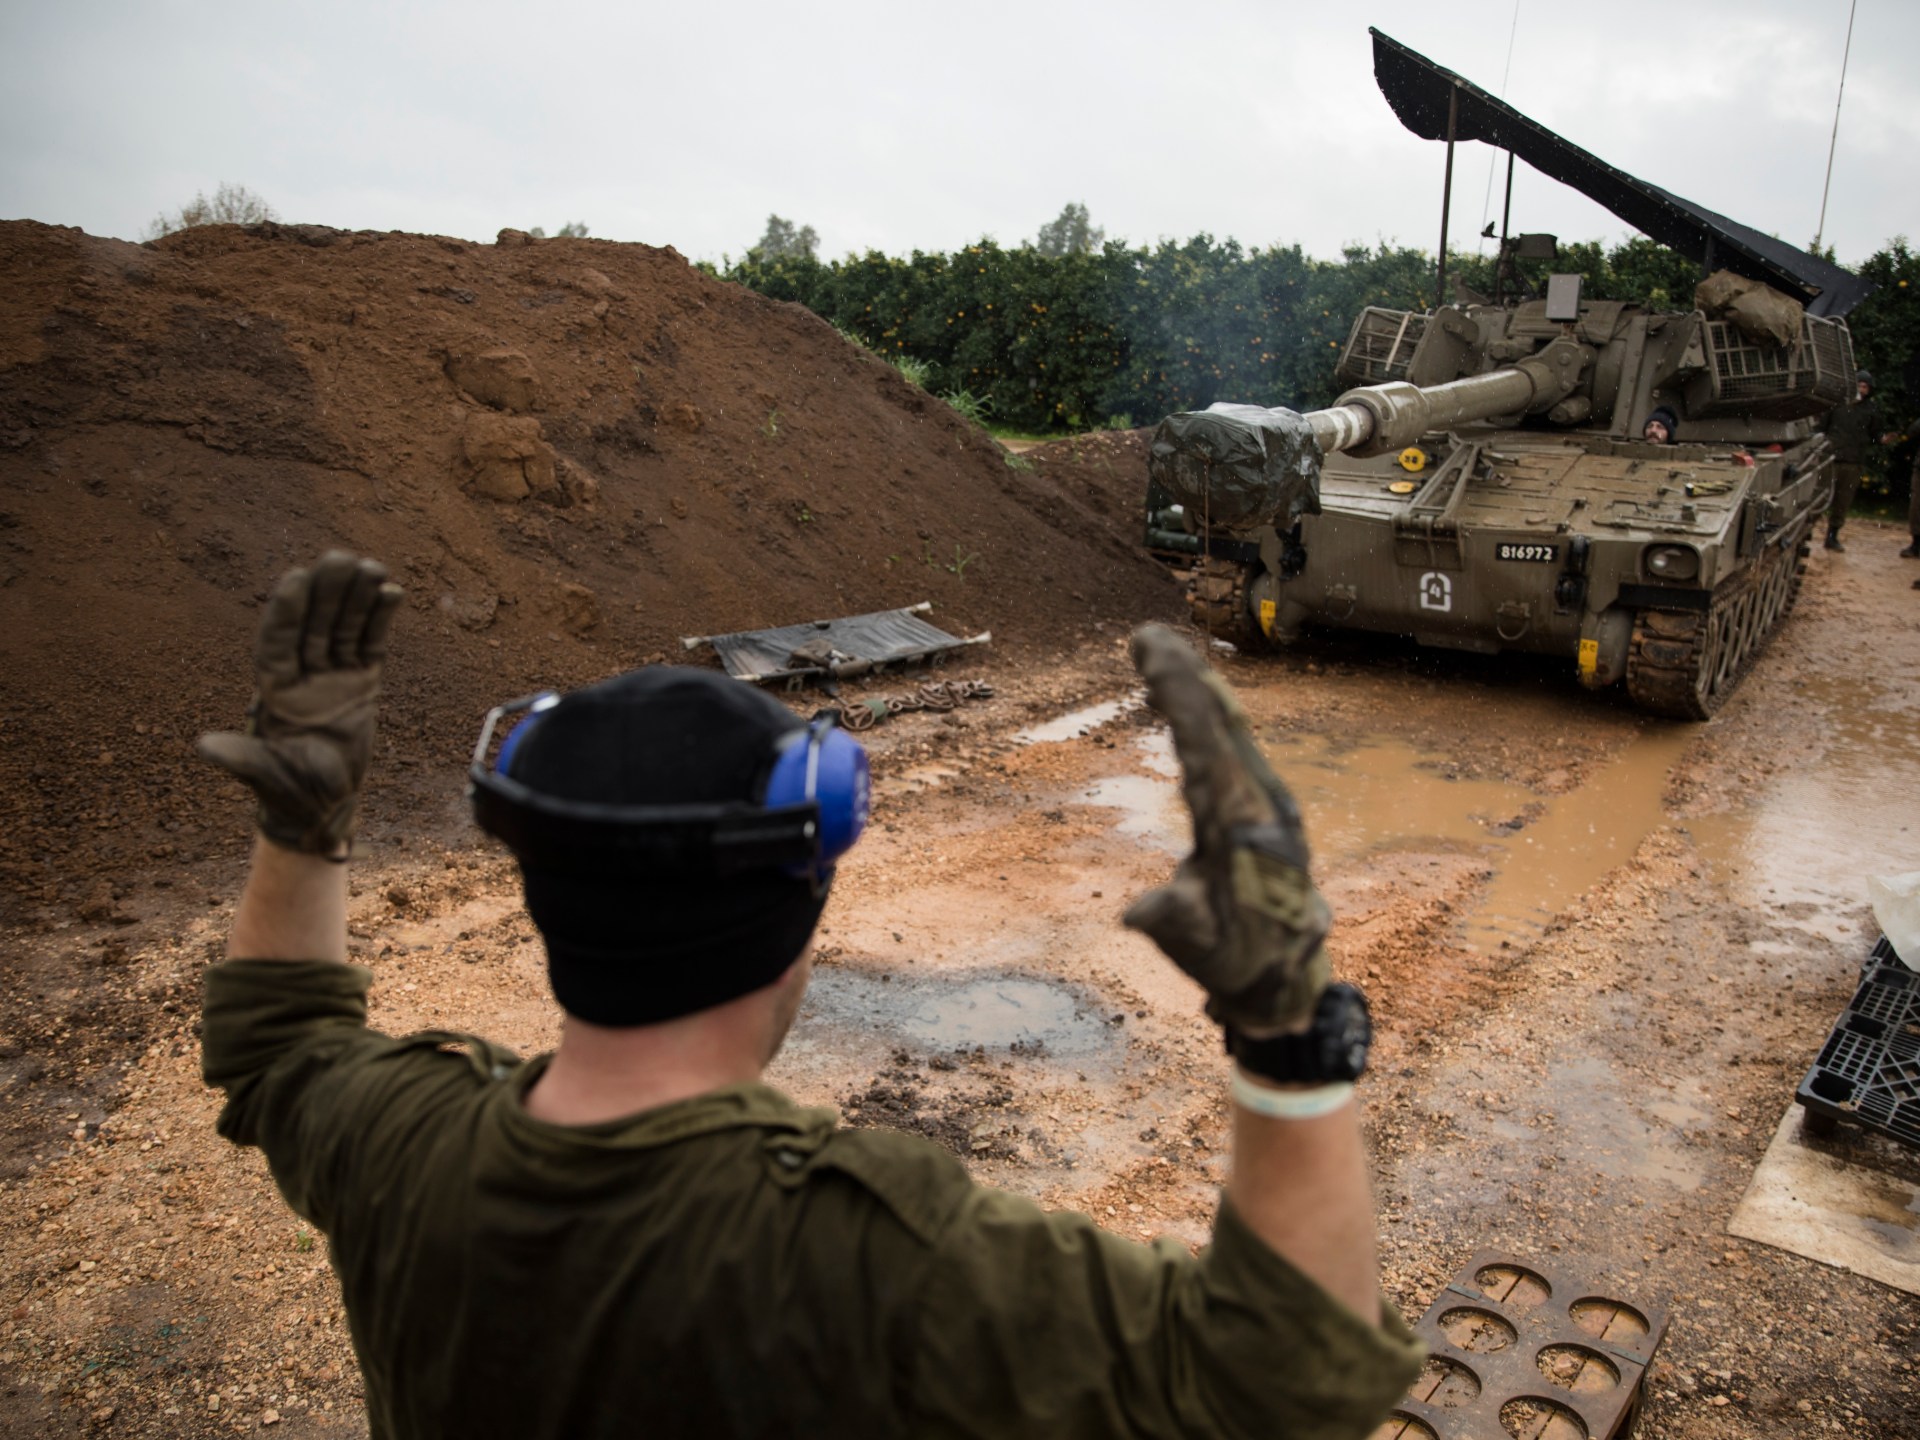 إسرائيل تستعد للانتقال من حالة الدفاع إلى الهجوم في مواجهة حزب الله | أخبار – البوكس نيوز